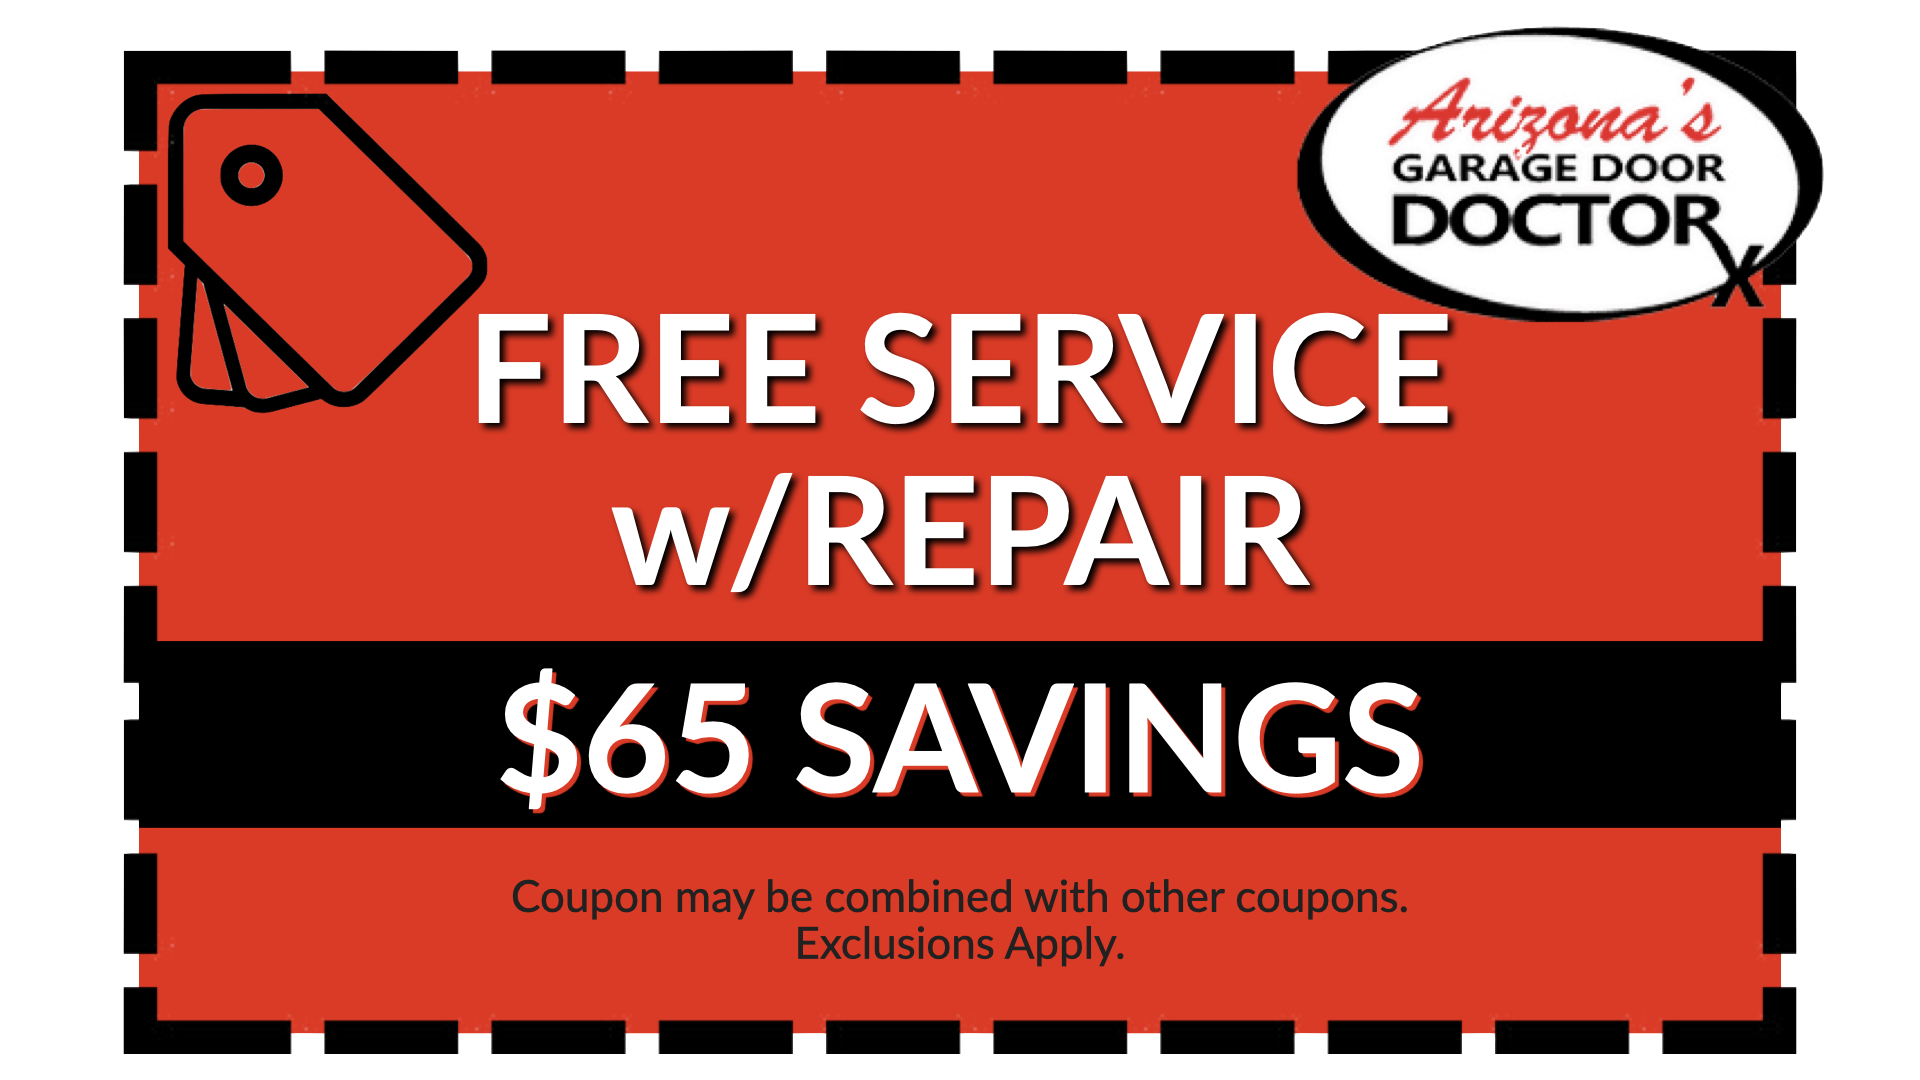 arizona's garage door doctor coupon free service with repair